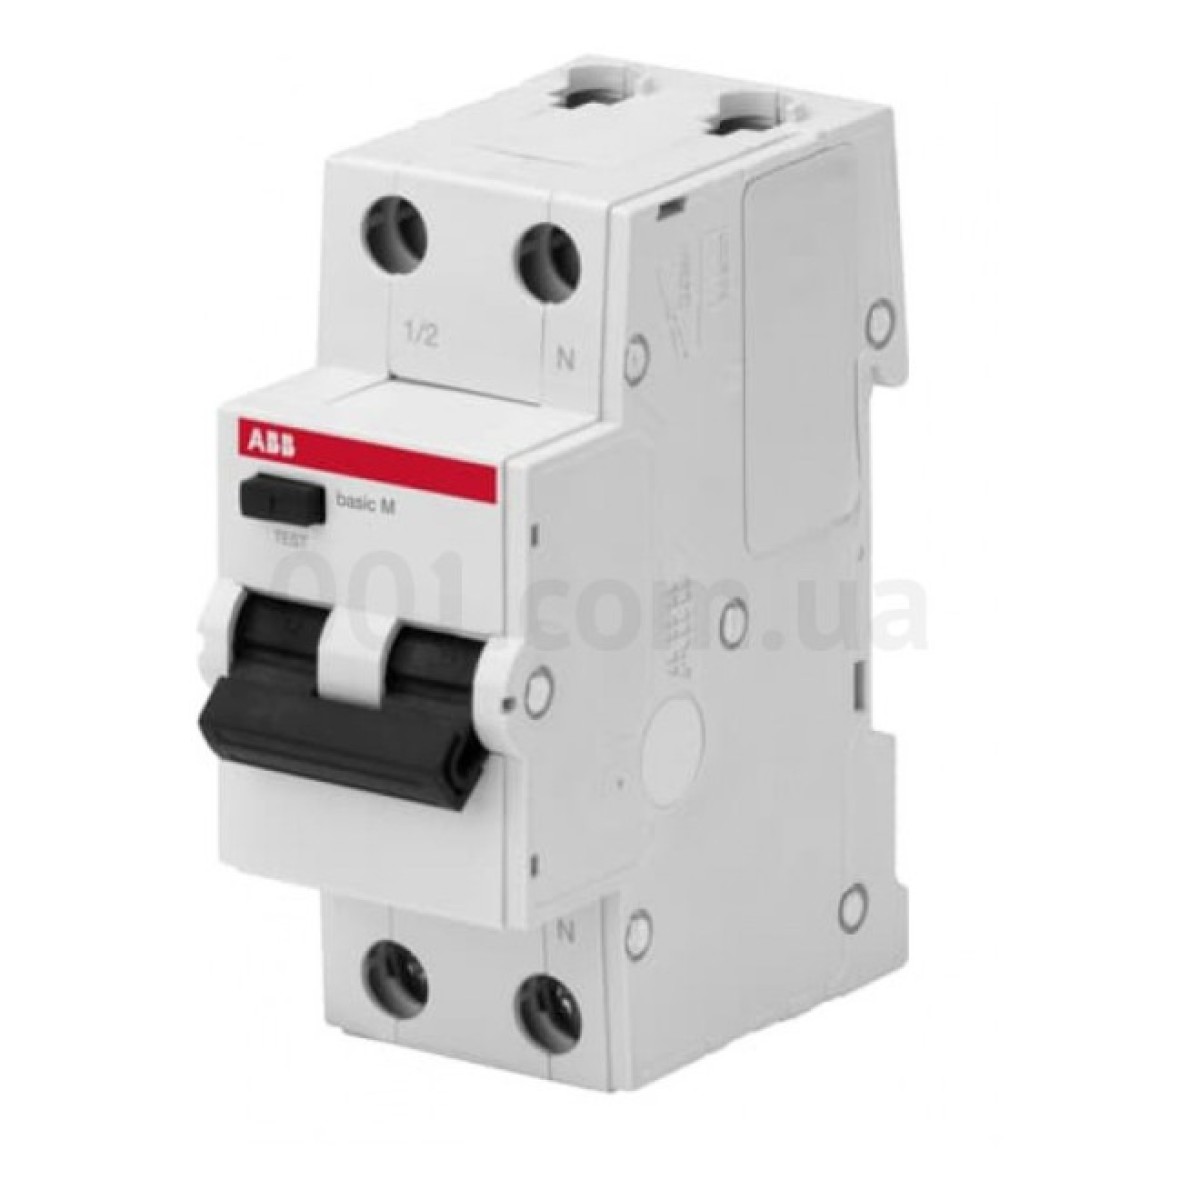 Автоматичний вимикач диференційного струму BMR415C16 1P+N/16А/30мА тип AC BASIC M, ABB 98_98.jpg - фото 1